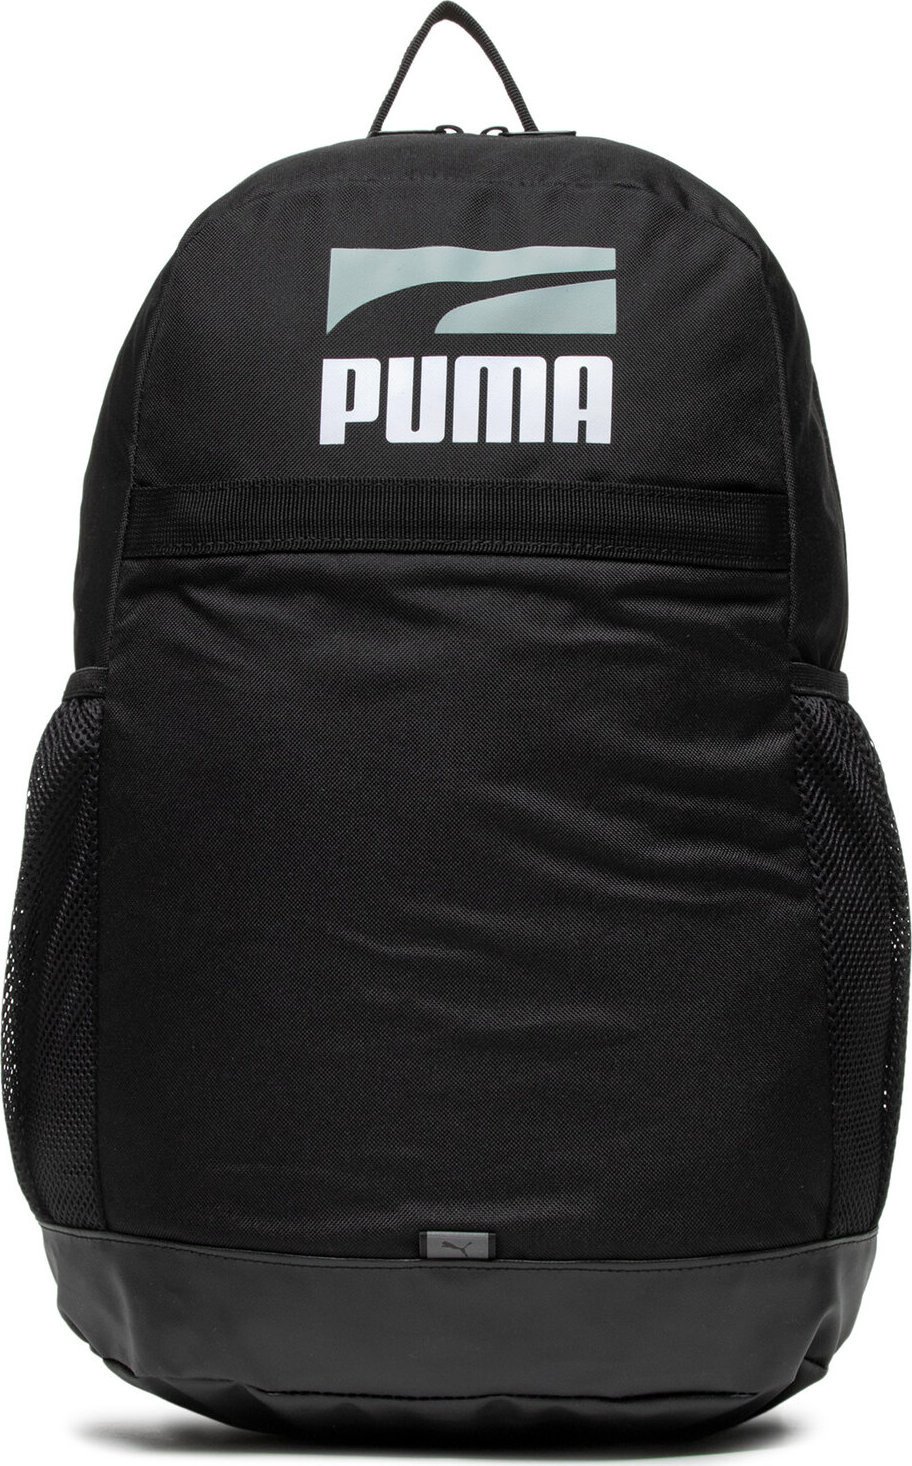 Batoh Puma Plus Backpack II 783910 01 Black